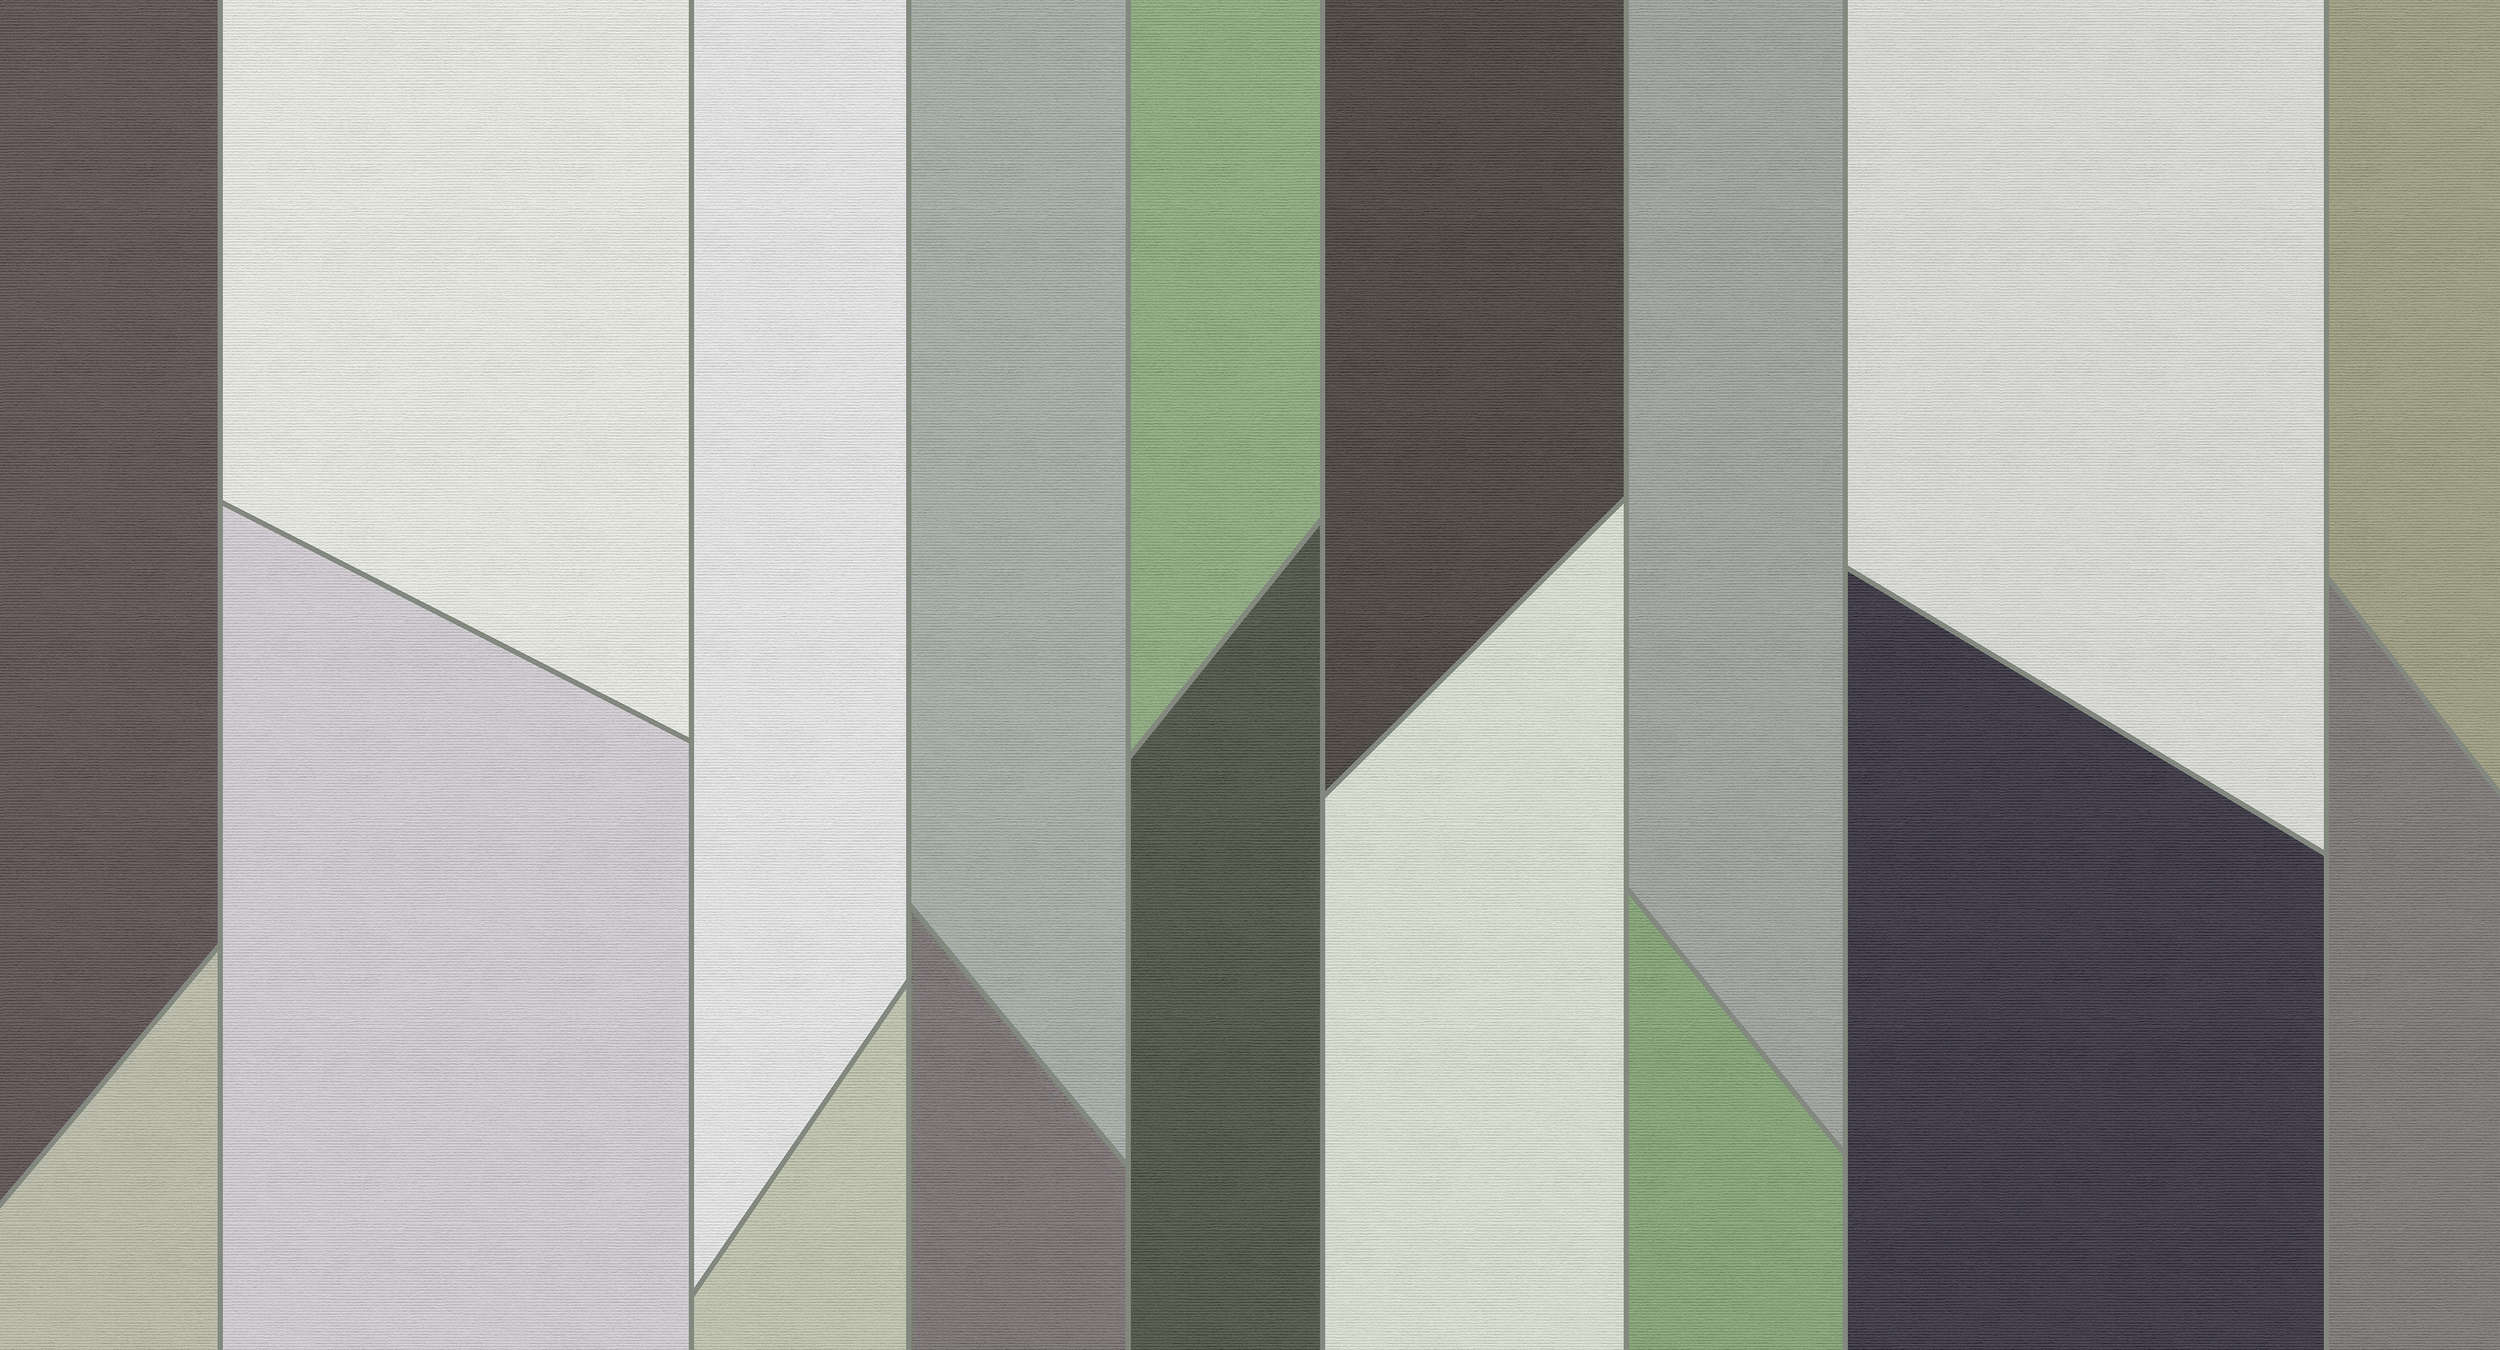             Geometry 3 - Papier peint rayé à structure côtelée au design rétro et coloré - vert, violet | Intissé lisse et mat
        